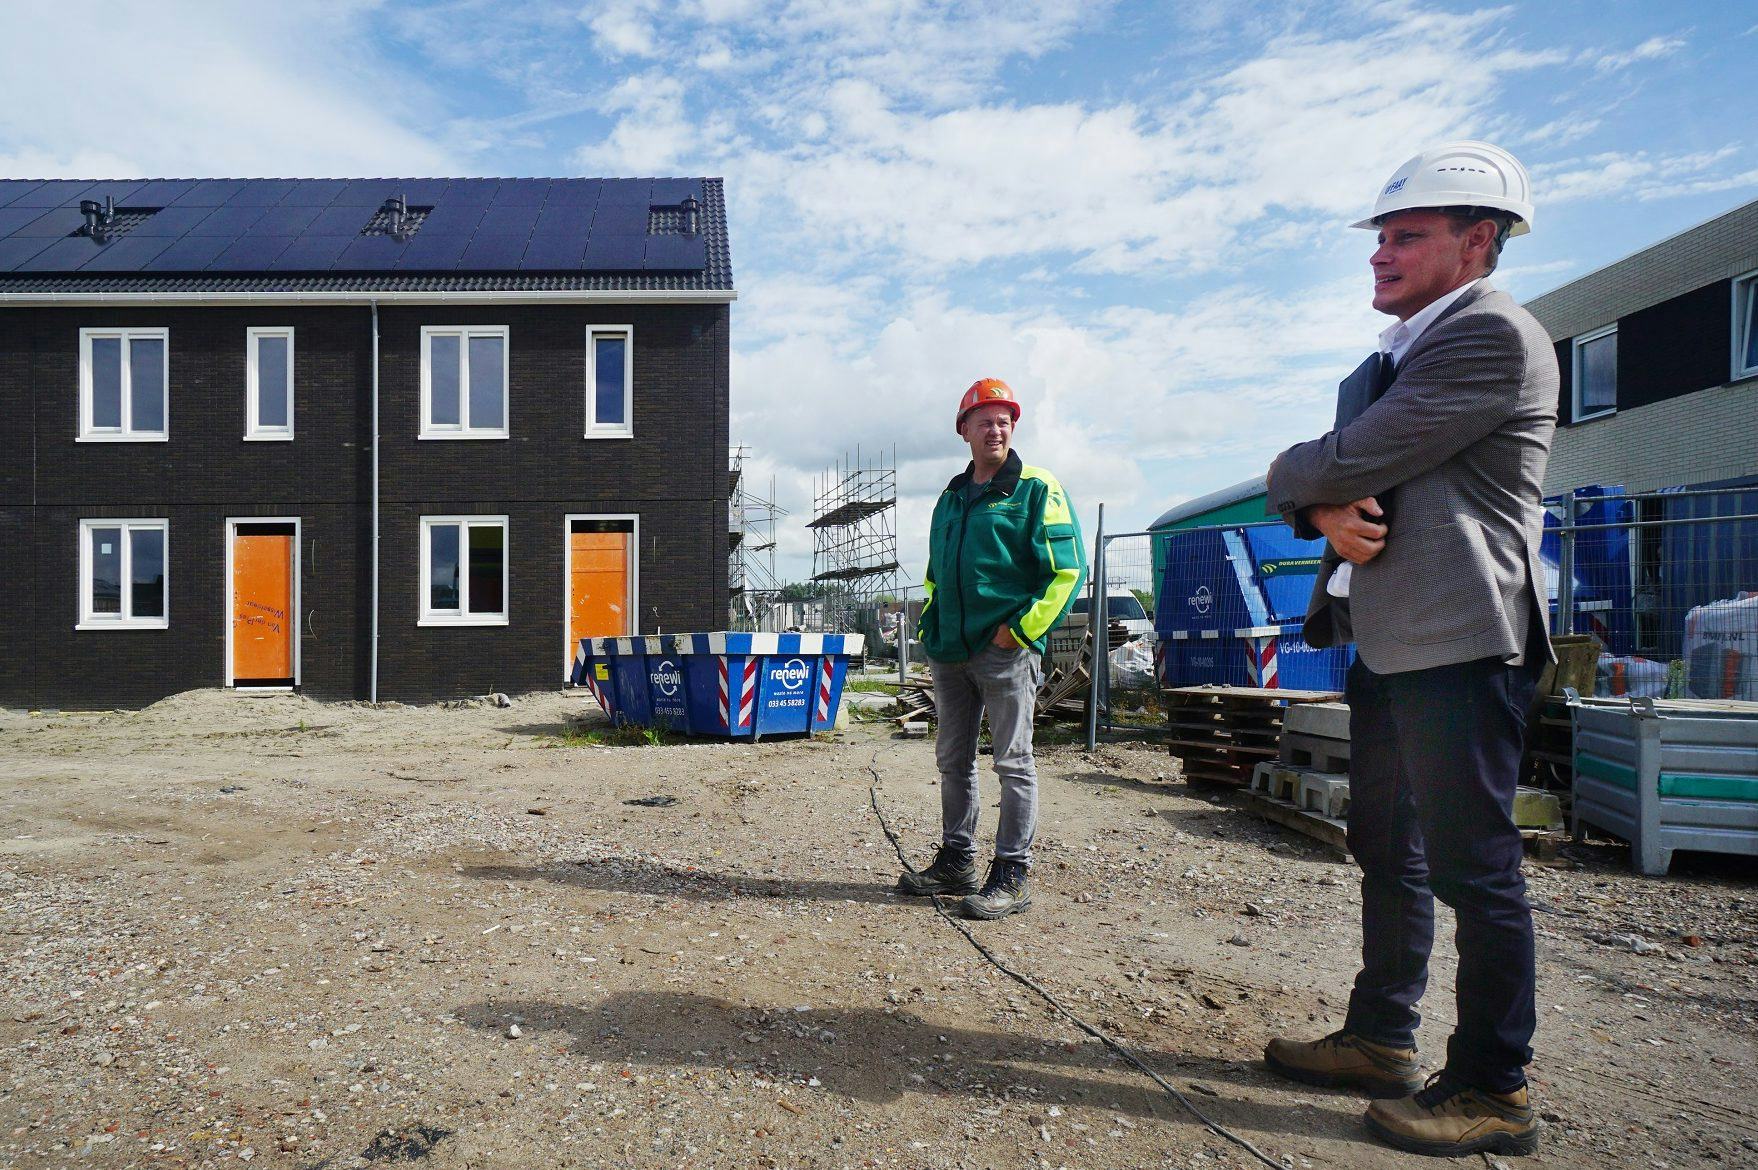 In de buurt De Houtwal zet Dura Vermeer meerdere geprefabriceerde
eengezinswoningen neer. Op de foto BIM Engineer Frank Heisterkamp en algemeen
directeur Mark Faay.